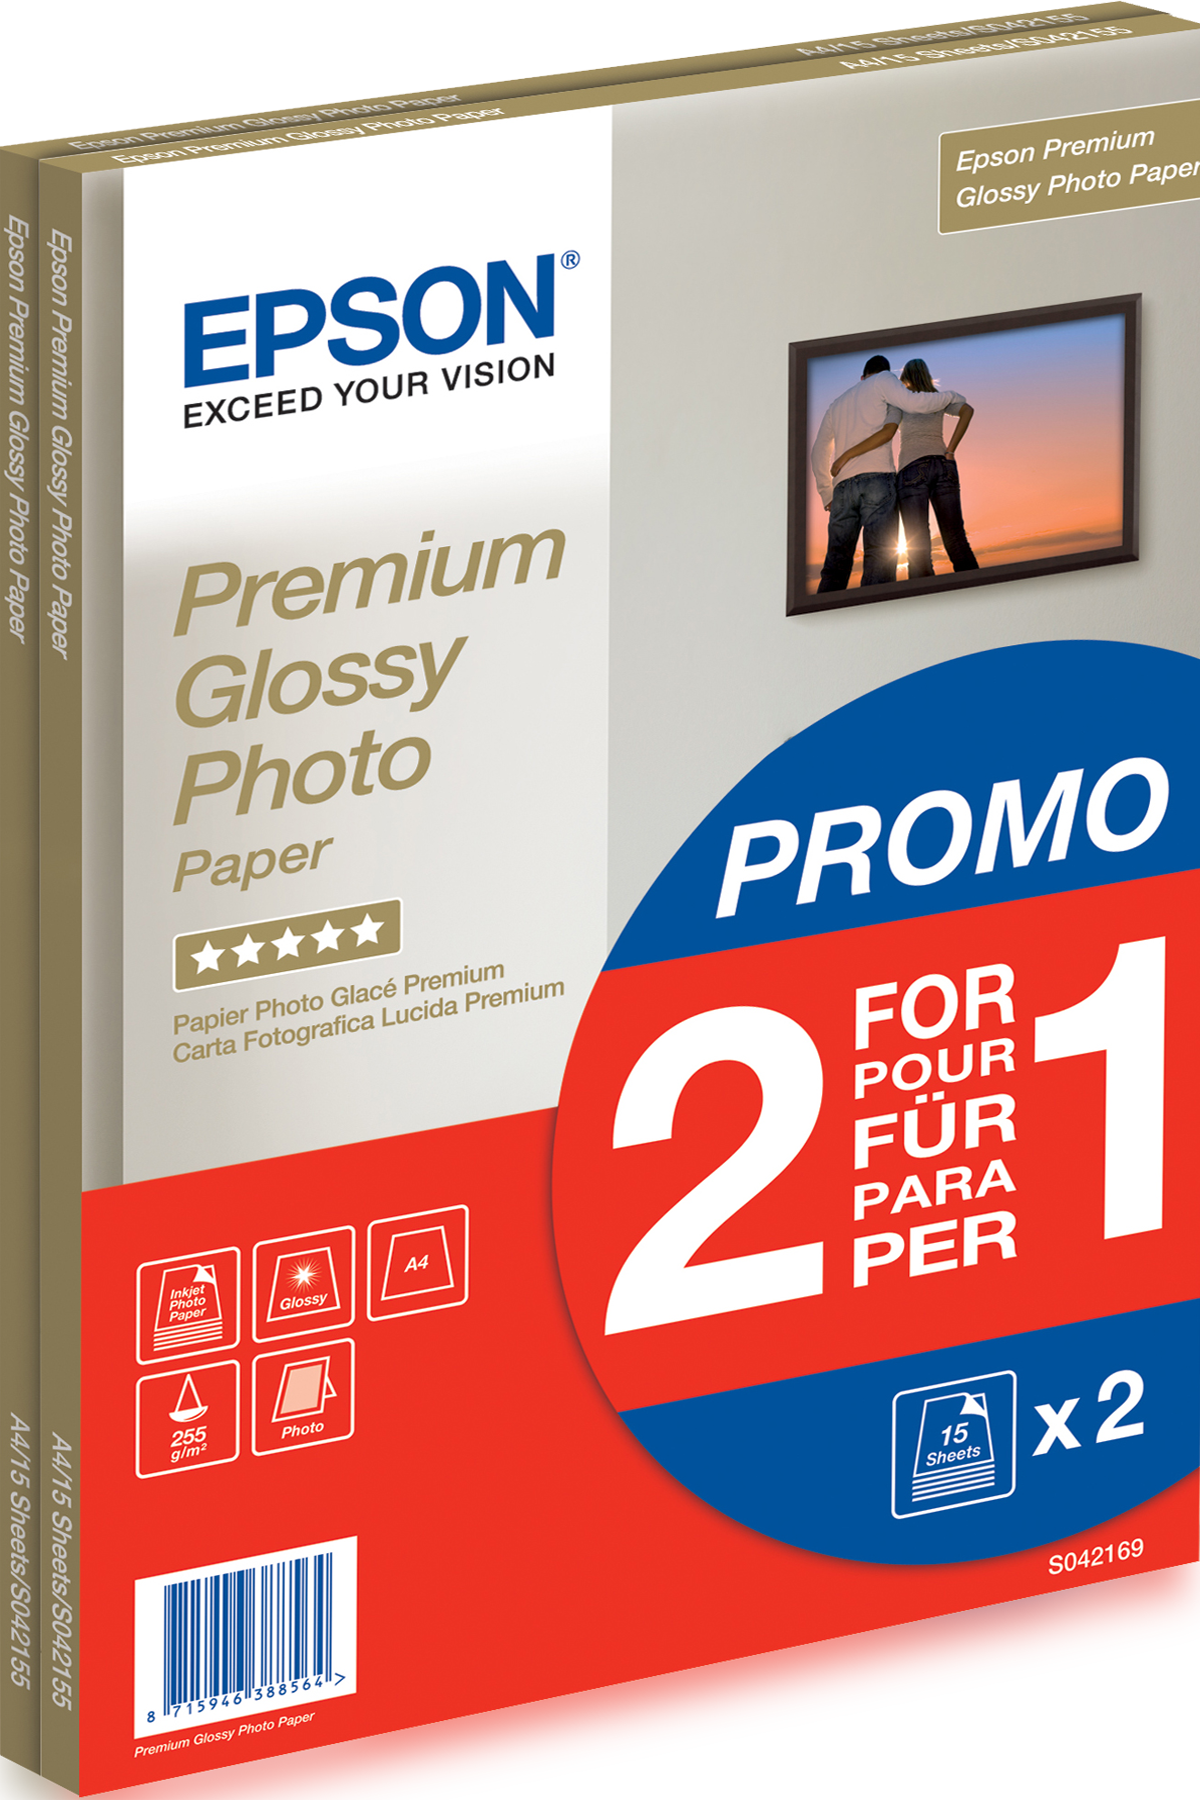 Epson Premium Photo Paper C13S042169 Fotopapier DIN A4 255 g/m² 30 Blatt Hochglänzend kaufen